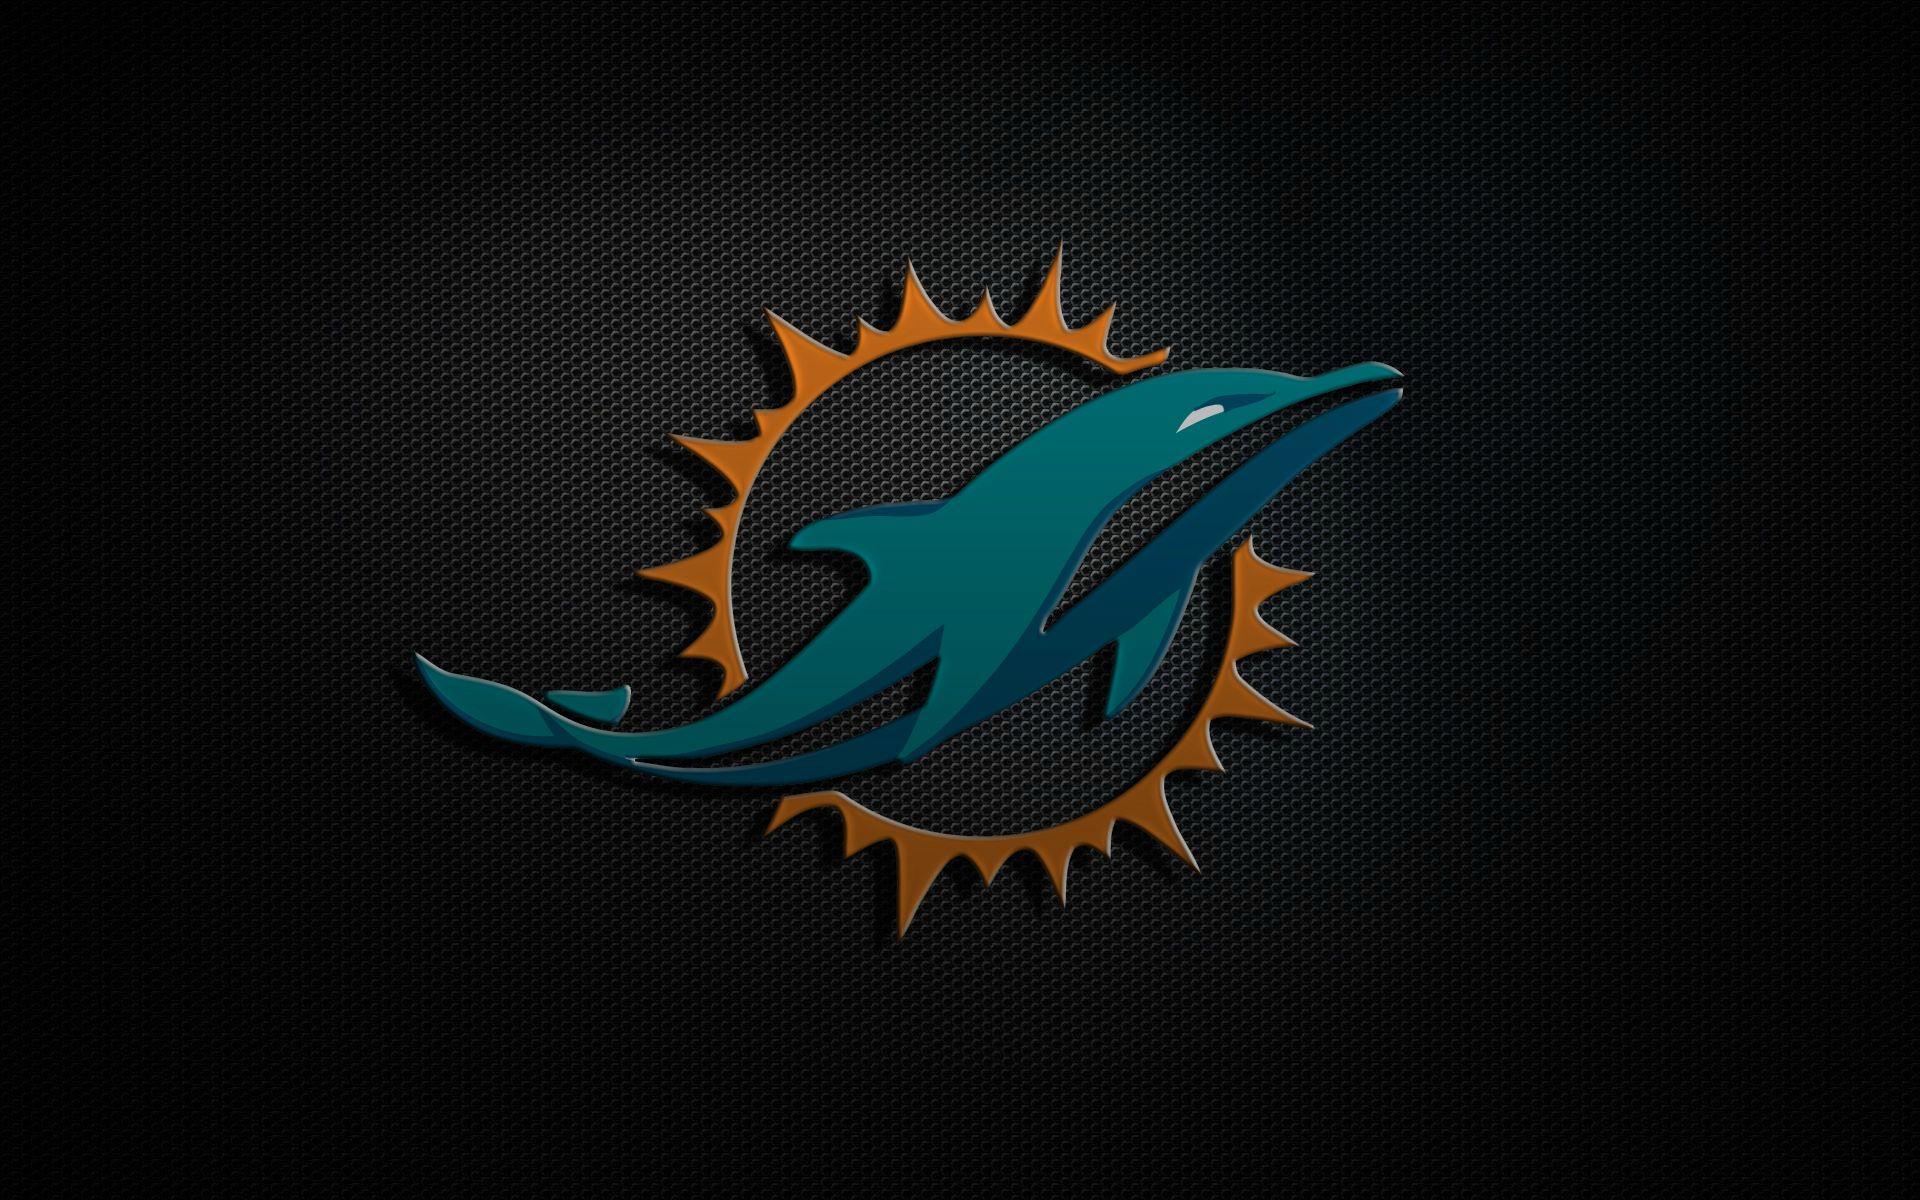 Free Miami Dolphins Wallpaper